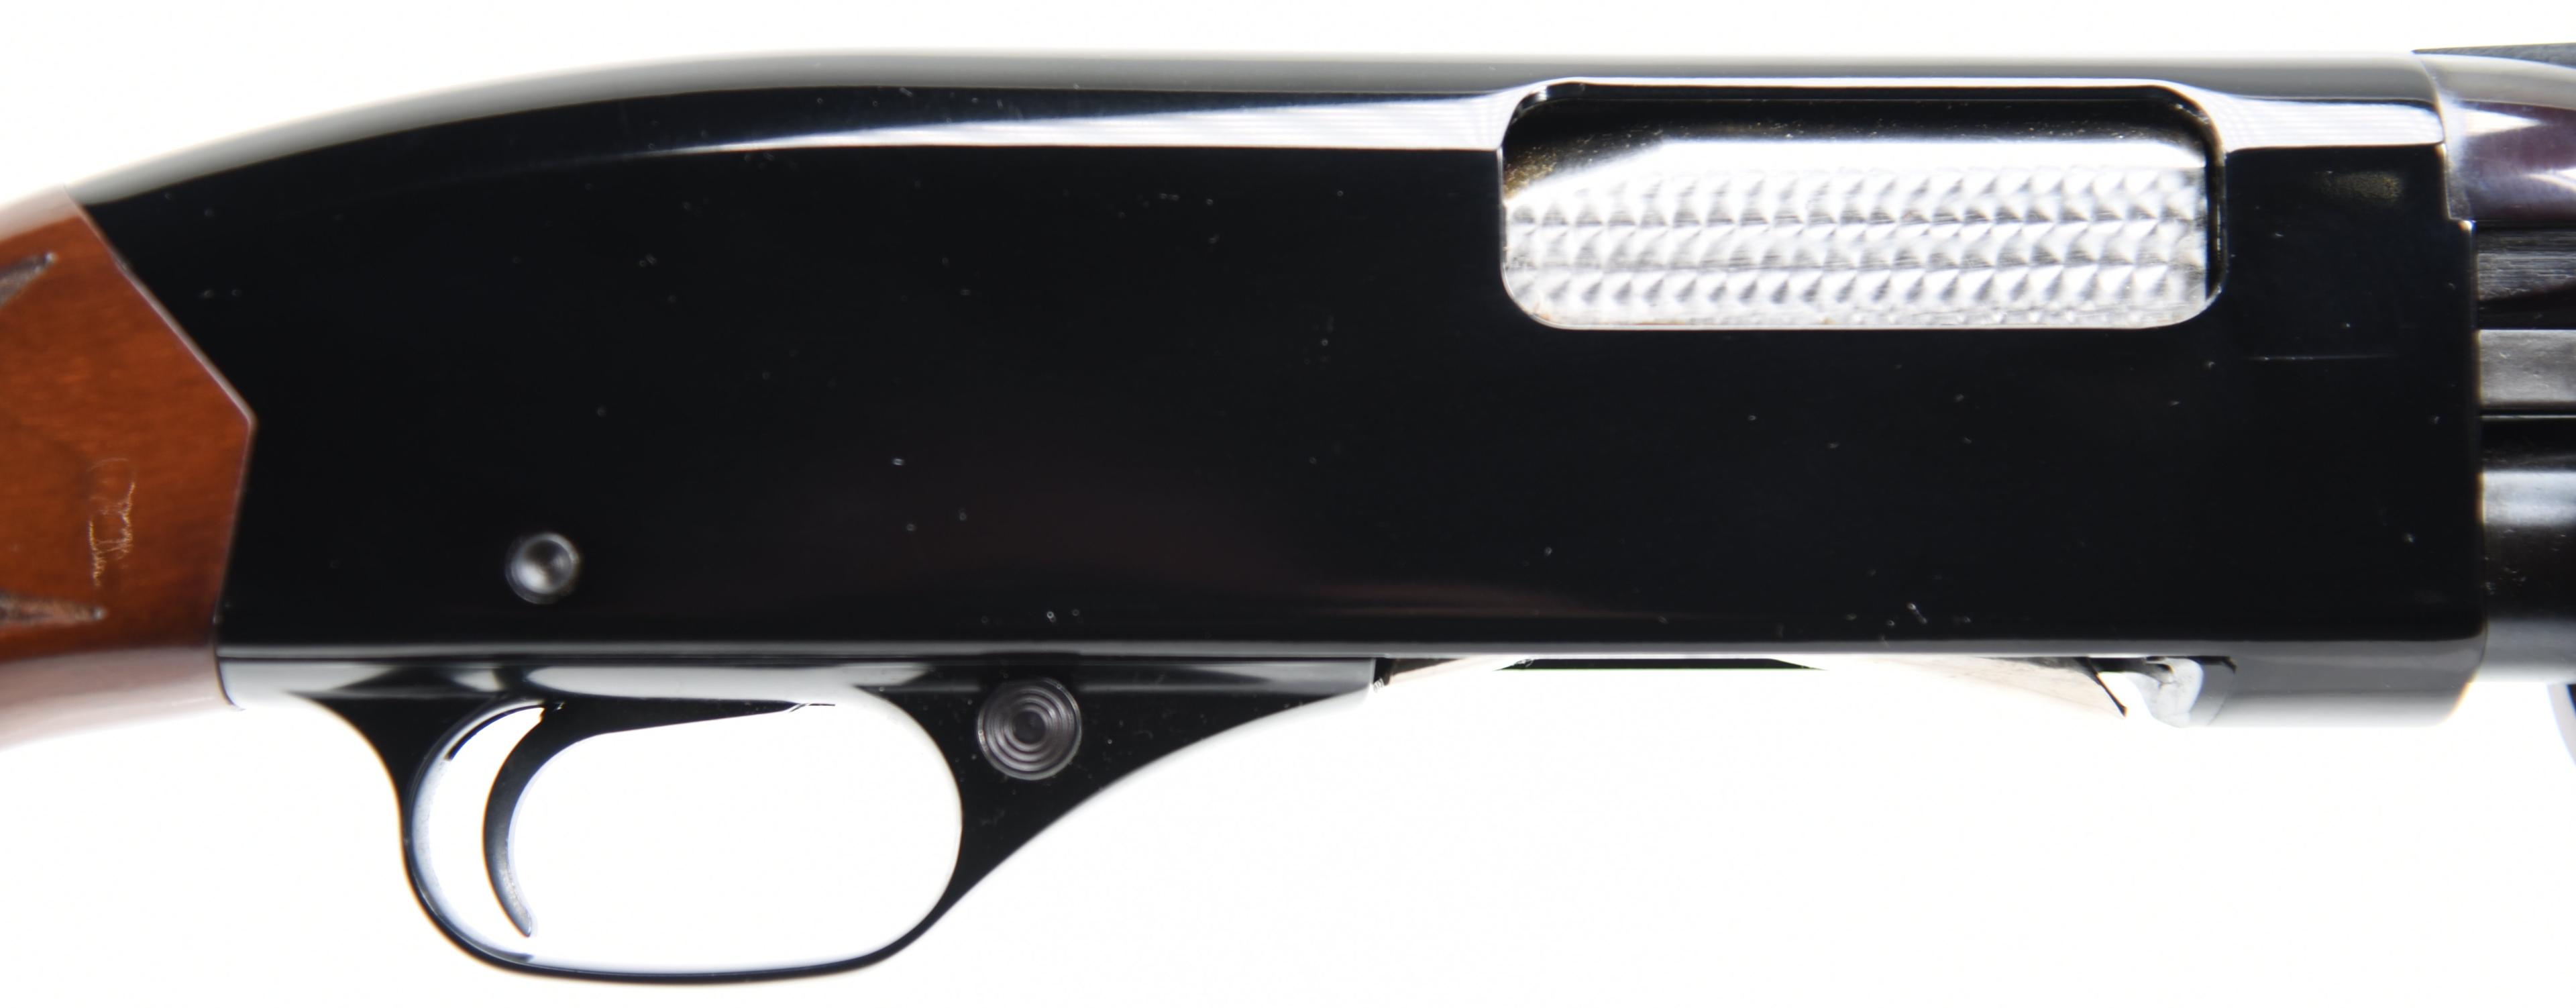 WINCHESTR 1300 XTR Pump Action Shotgun 12 GA